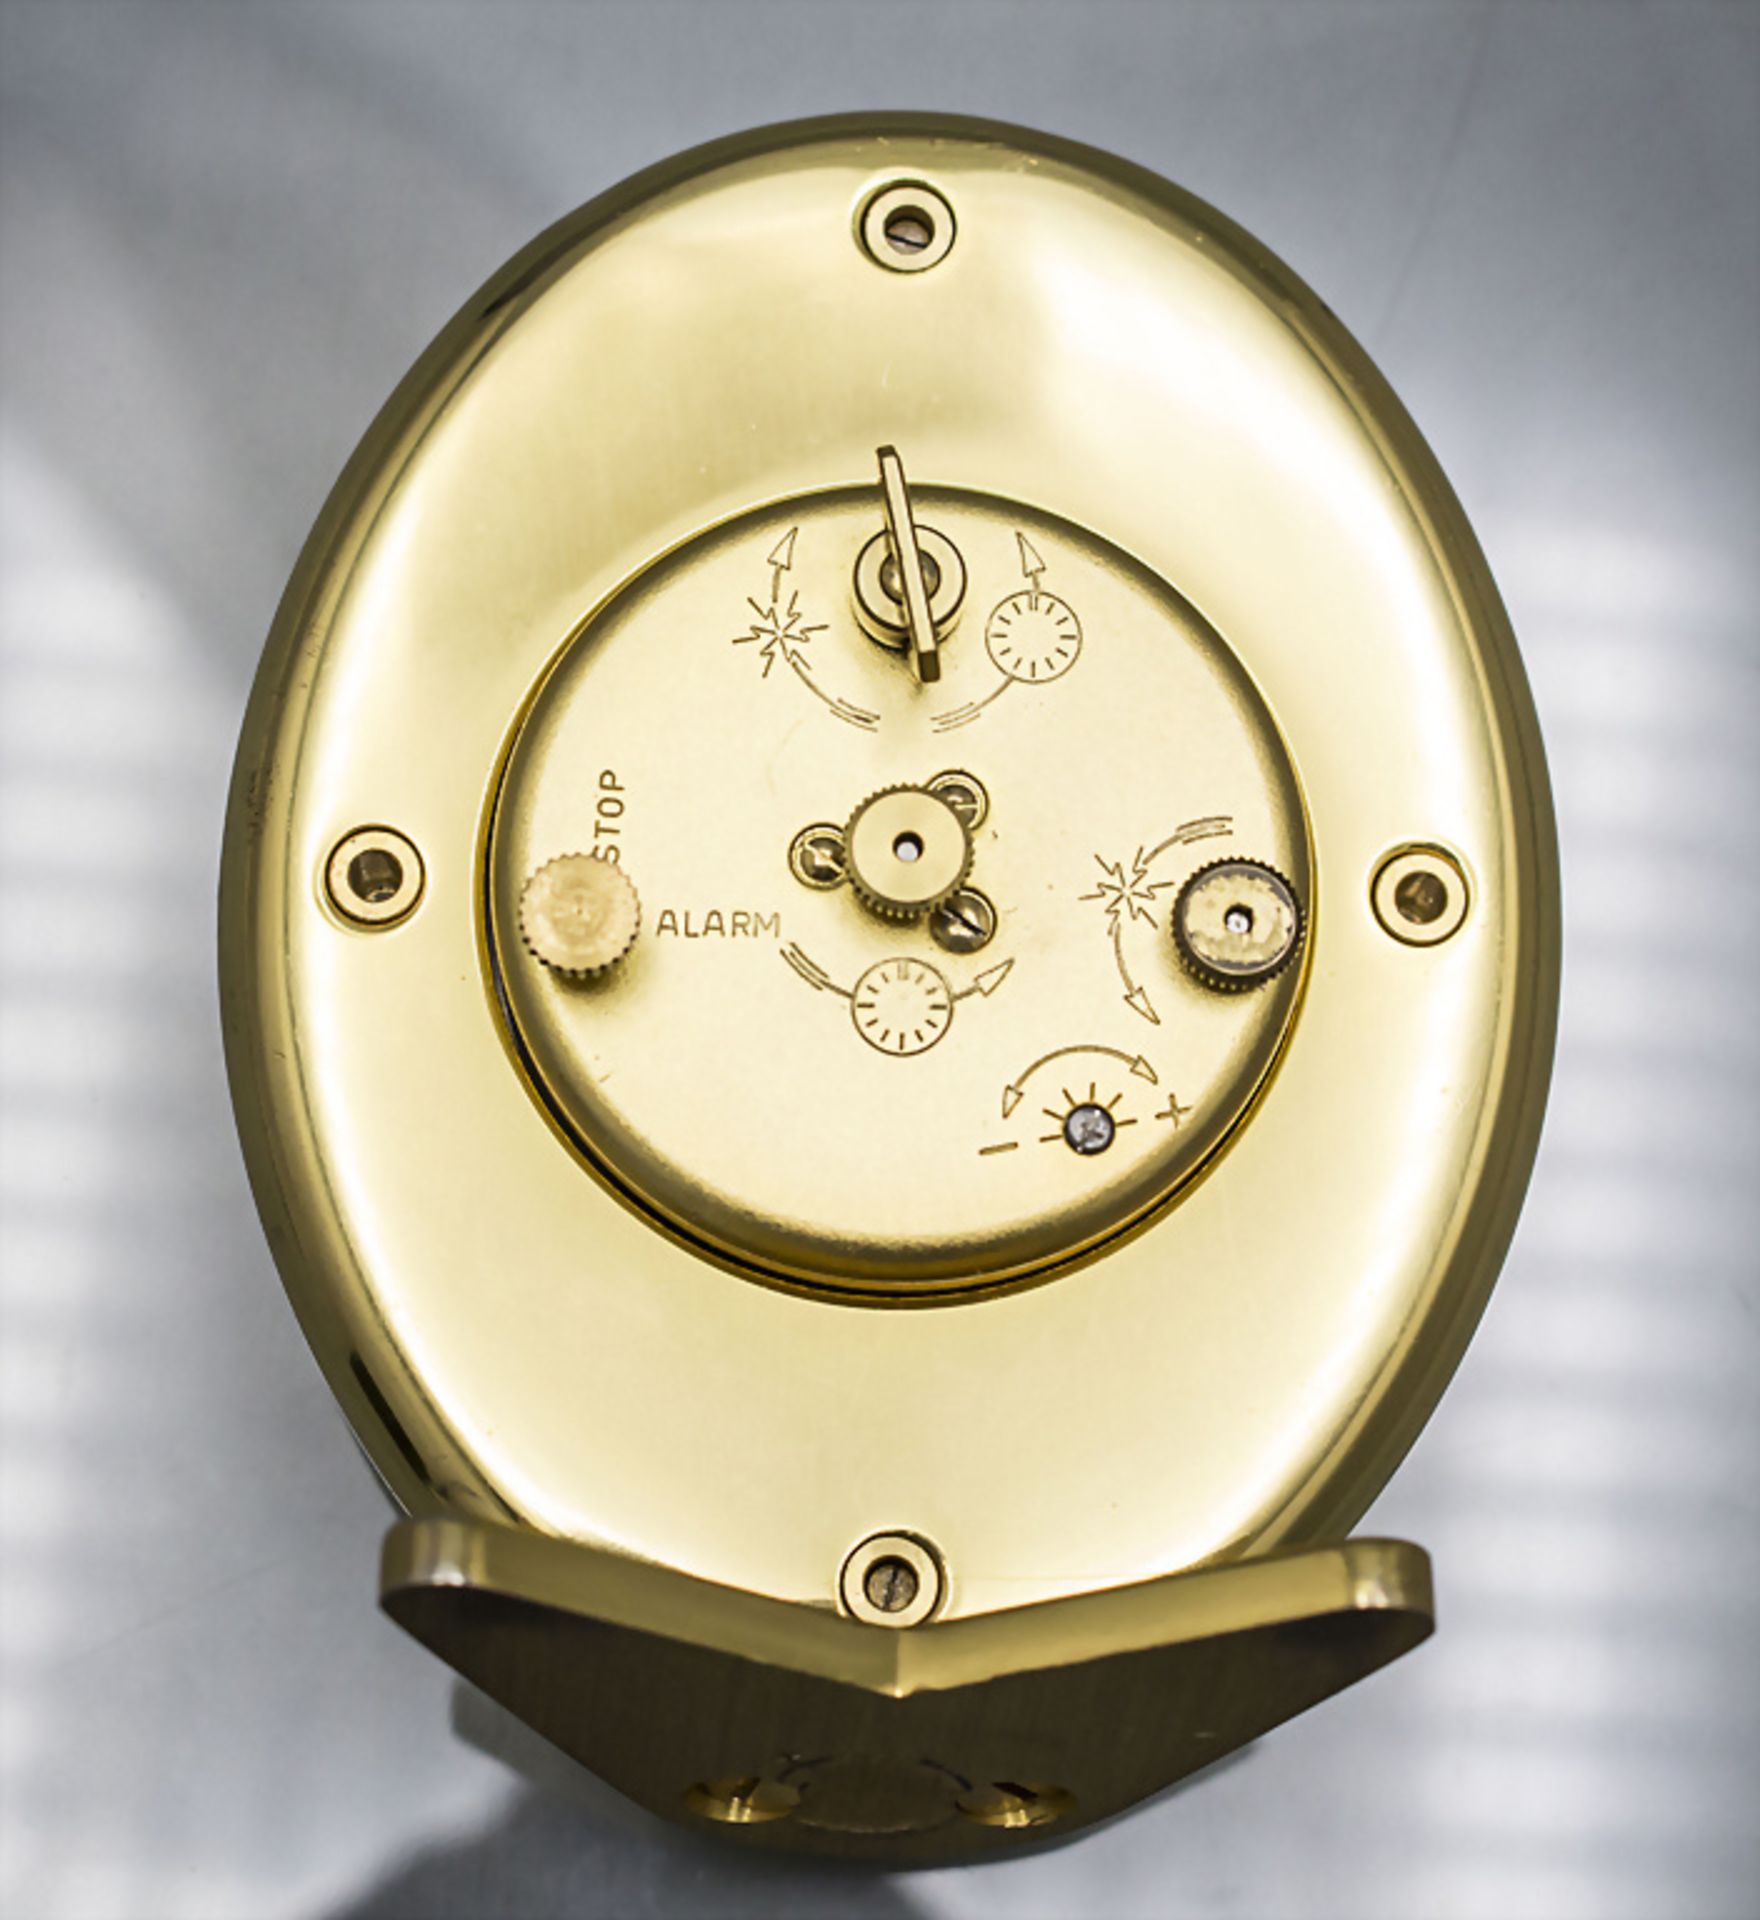 Tischuhr mit Wecker / An alarm clock, Jaeger LeCoultre, Swiss/Schweiz - Bild 5 aus 5